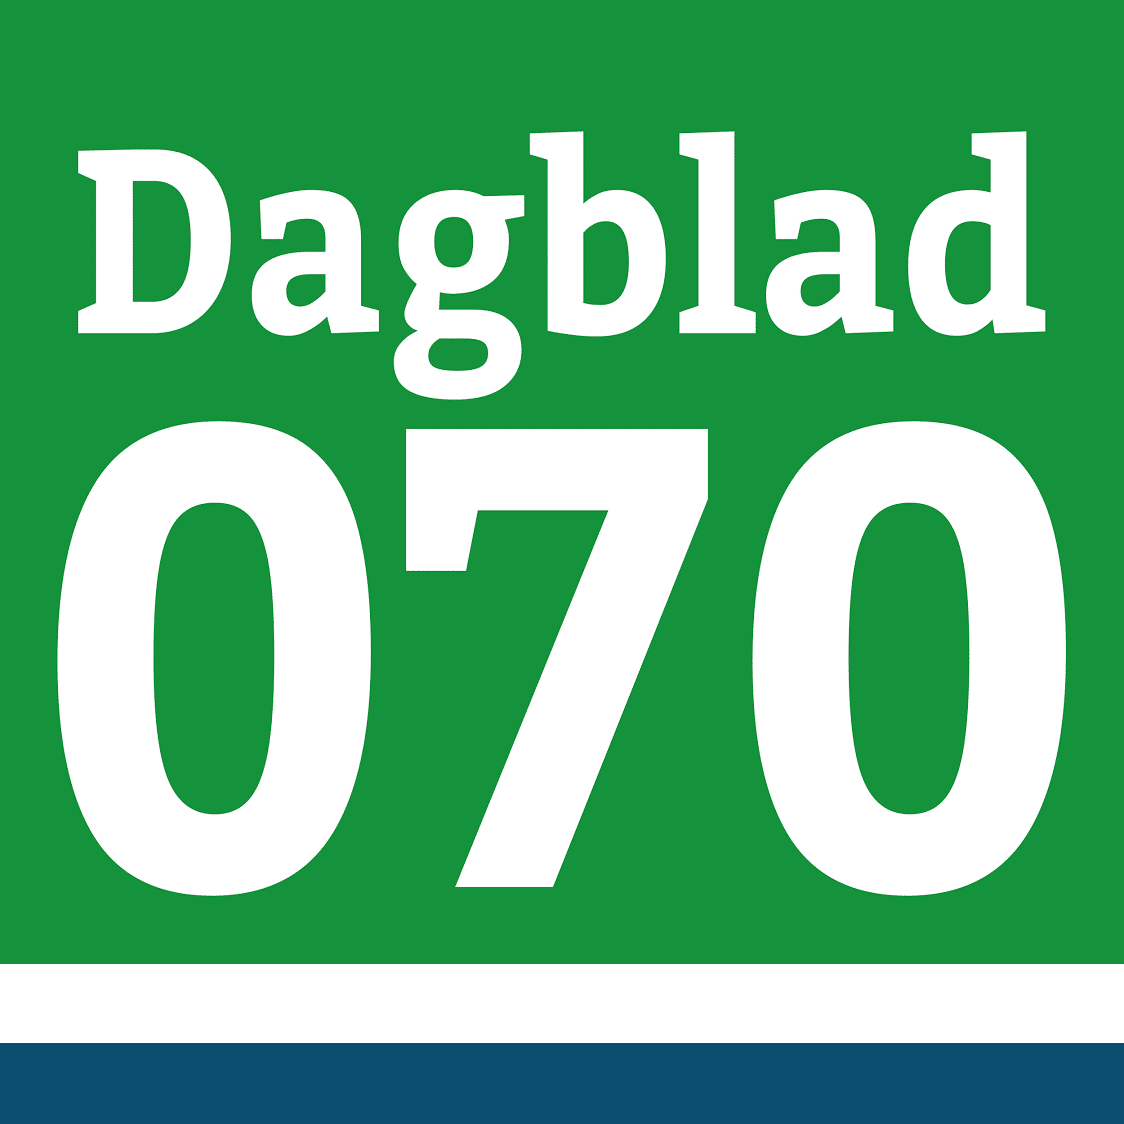 dagblad070.nl